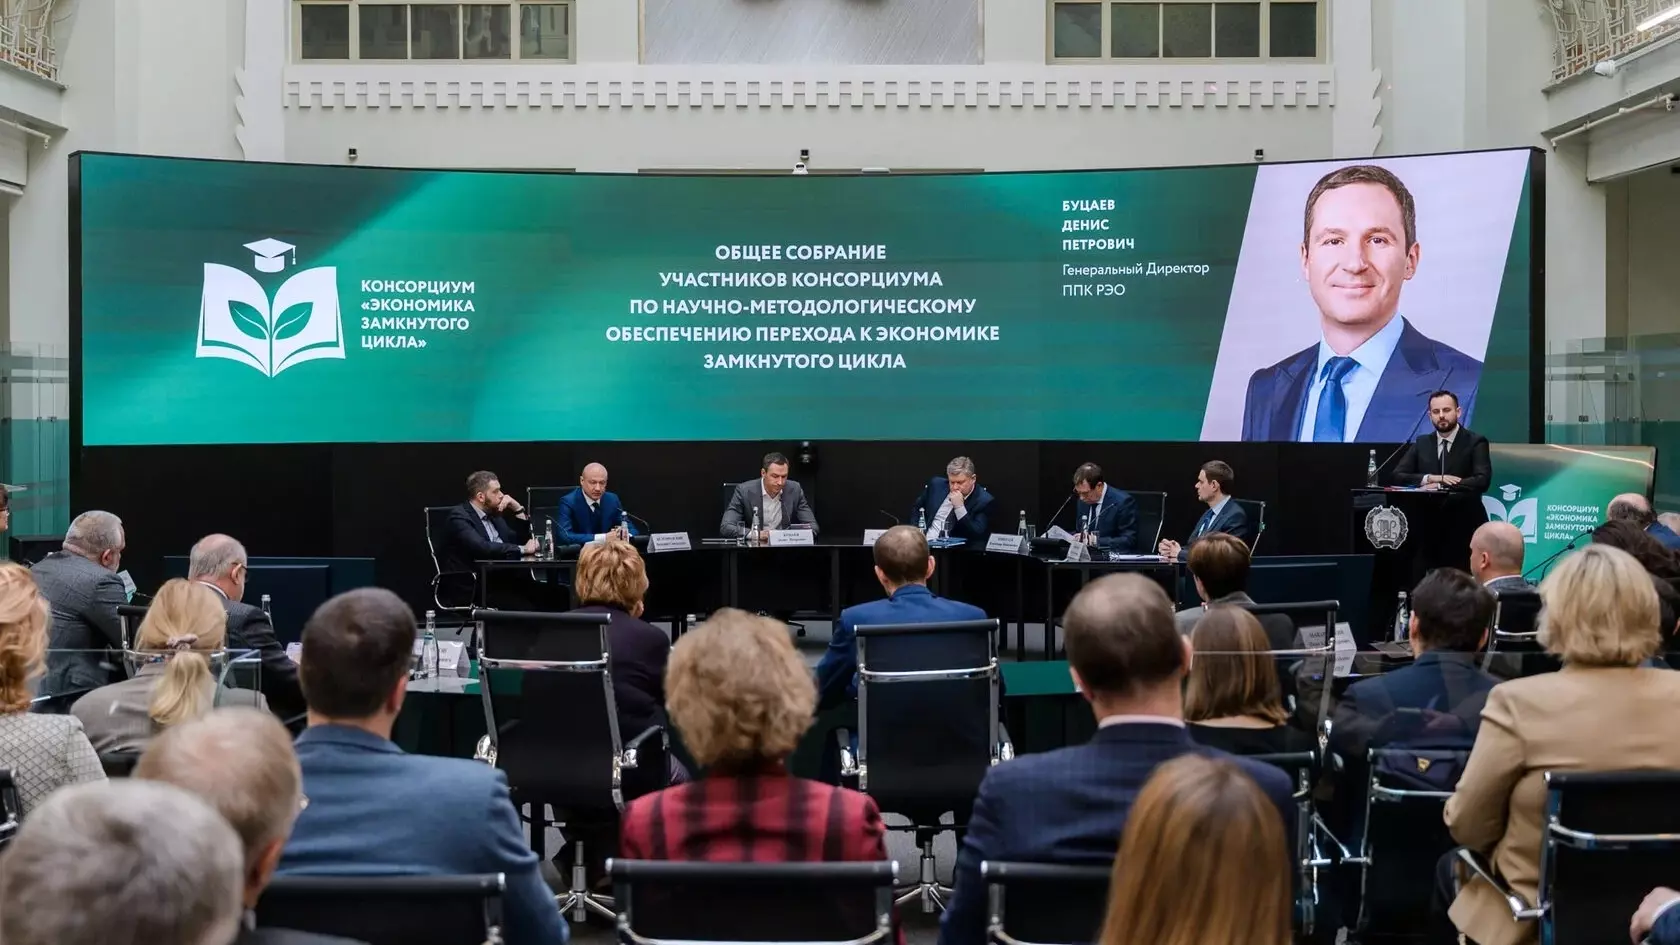 Буцаев предложил открыть на базе вузов центры компетенций по циркулярной экономике